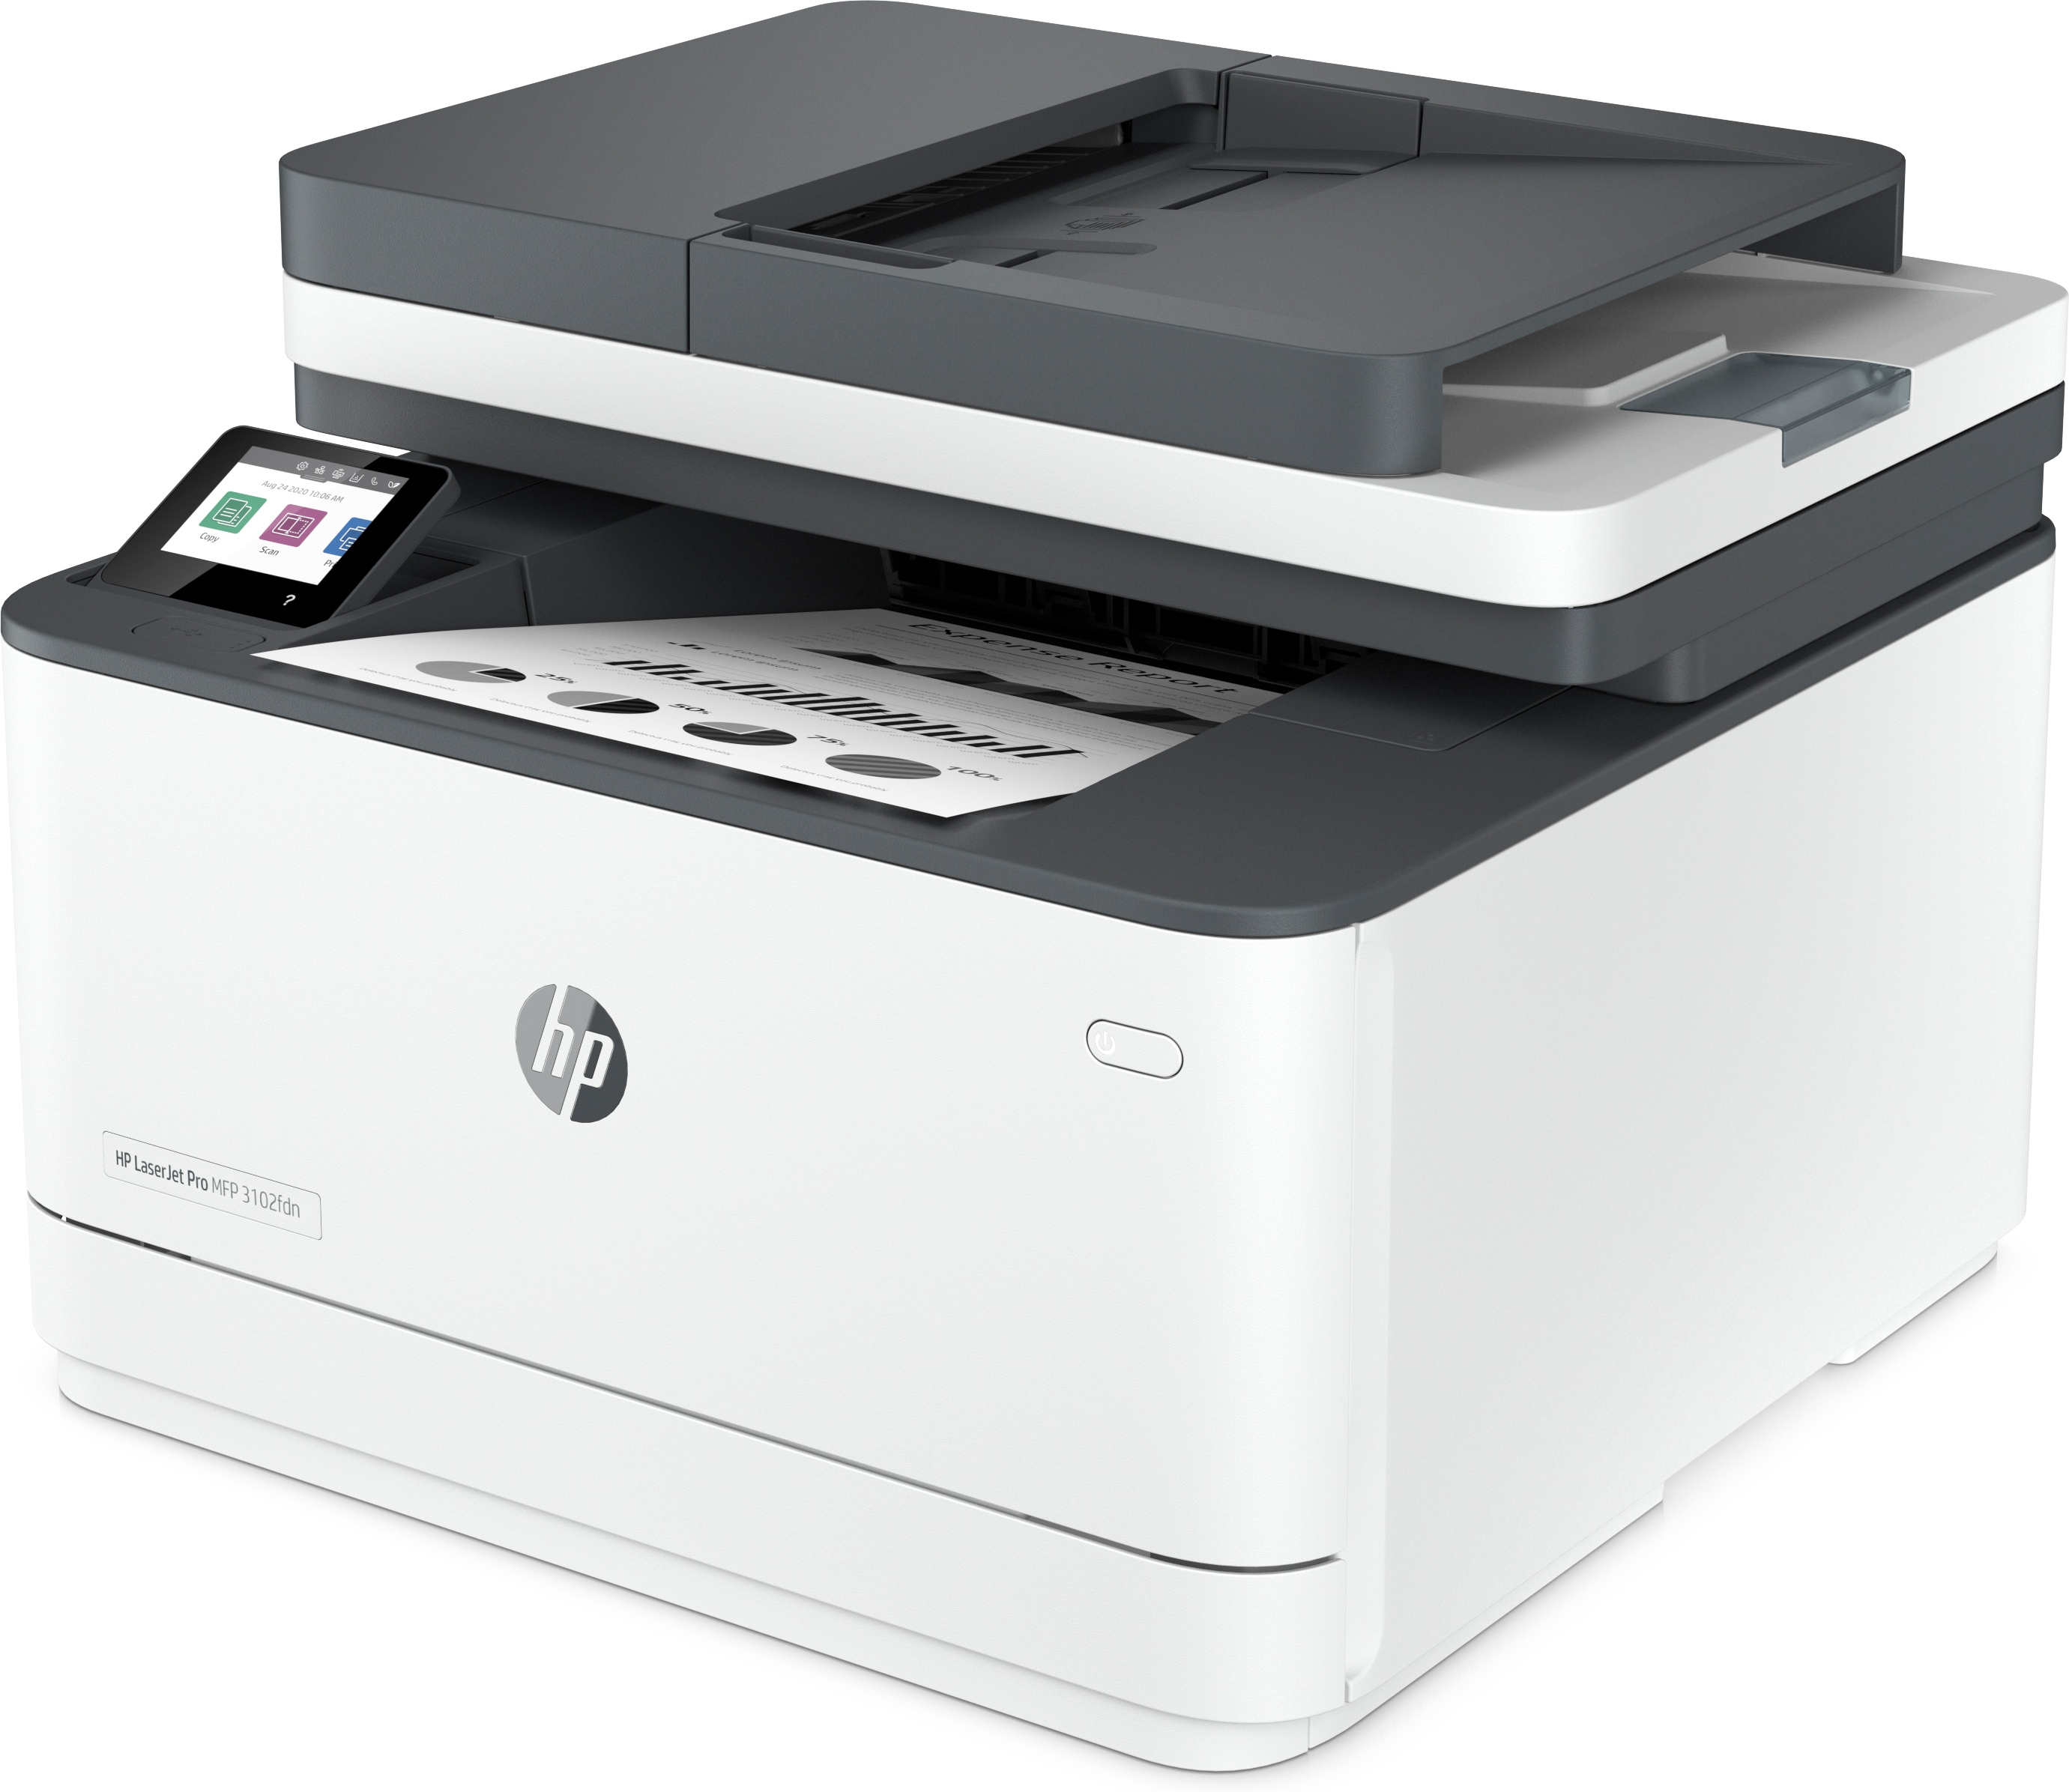 HP 3G629F#B19  HP LaserJet Stampante multifunzione Pro 3102fdn, Bianco e  nero, Stampante per Piccole e medie imprese, Stampa, copia, scansione, fax,  alimentatore automatico di documenti; Stampa fronte/retro; porta unità  flash USB